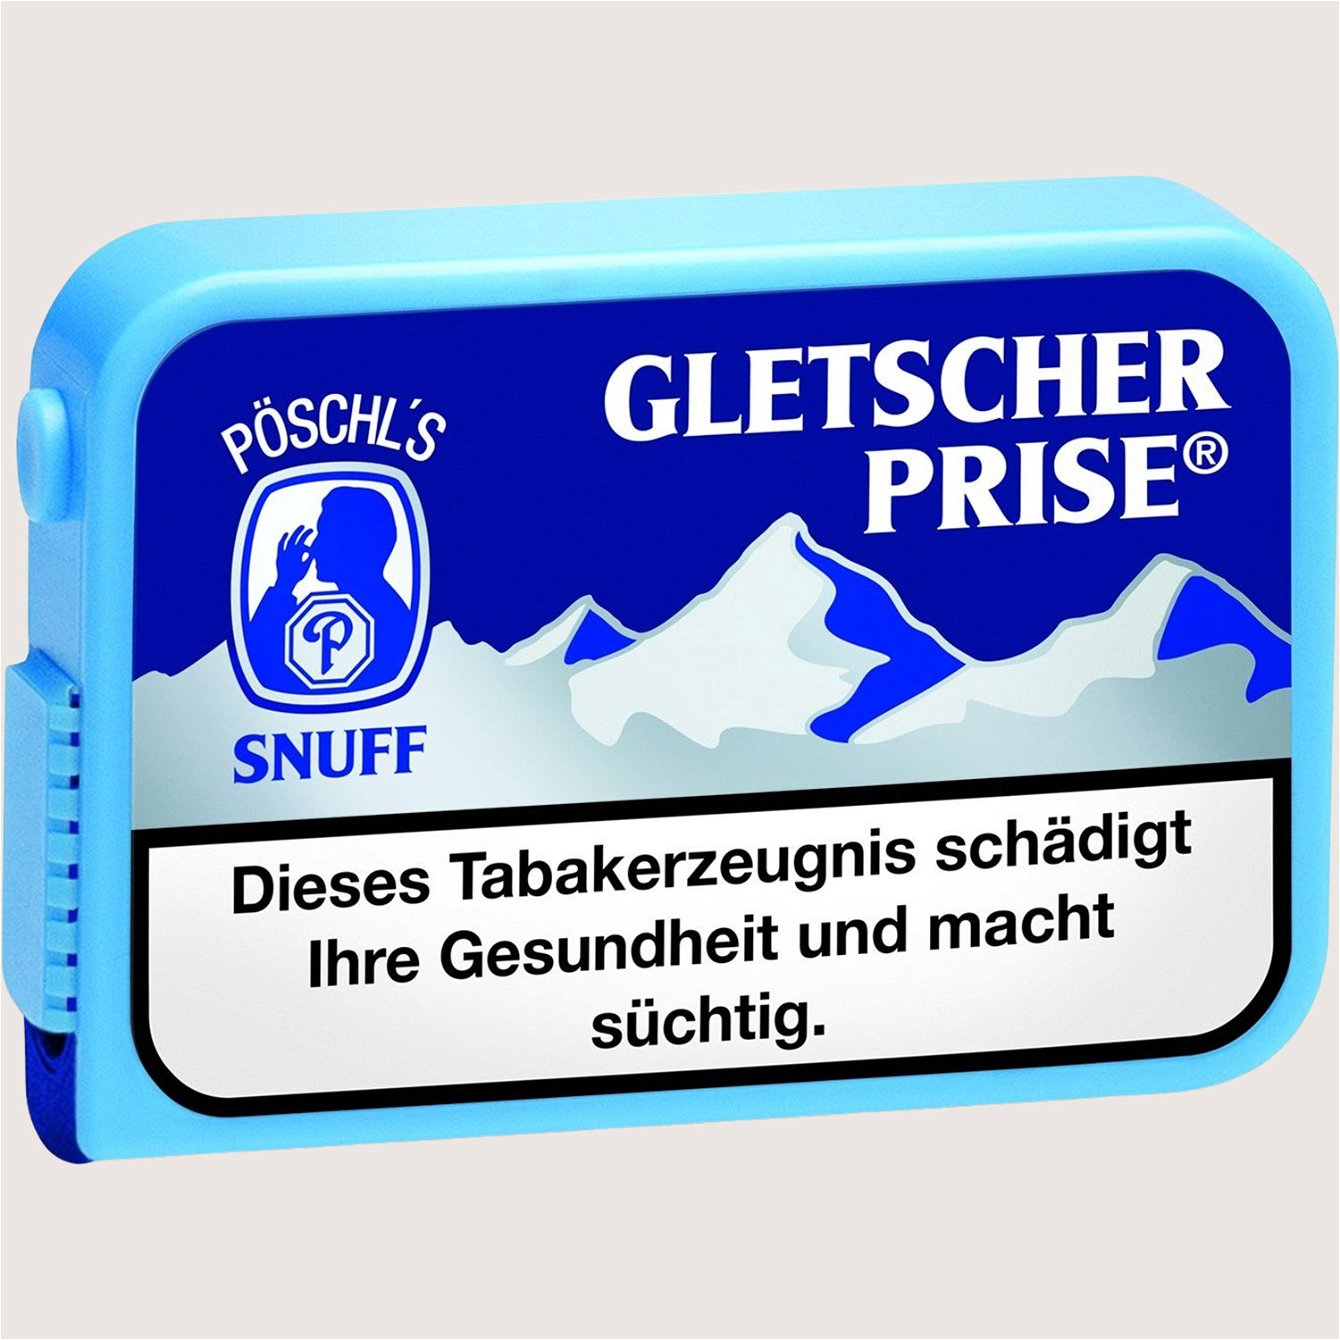 Pöschl Gletscherprise Snuff